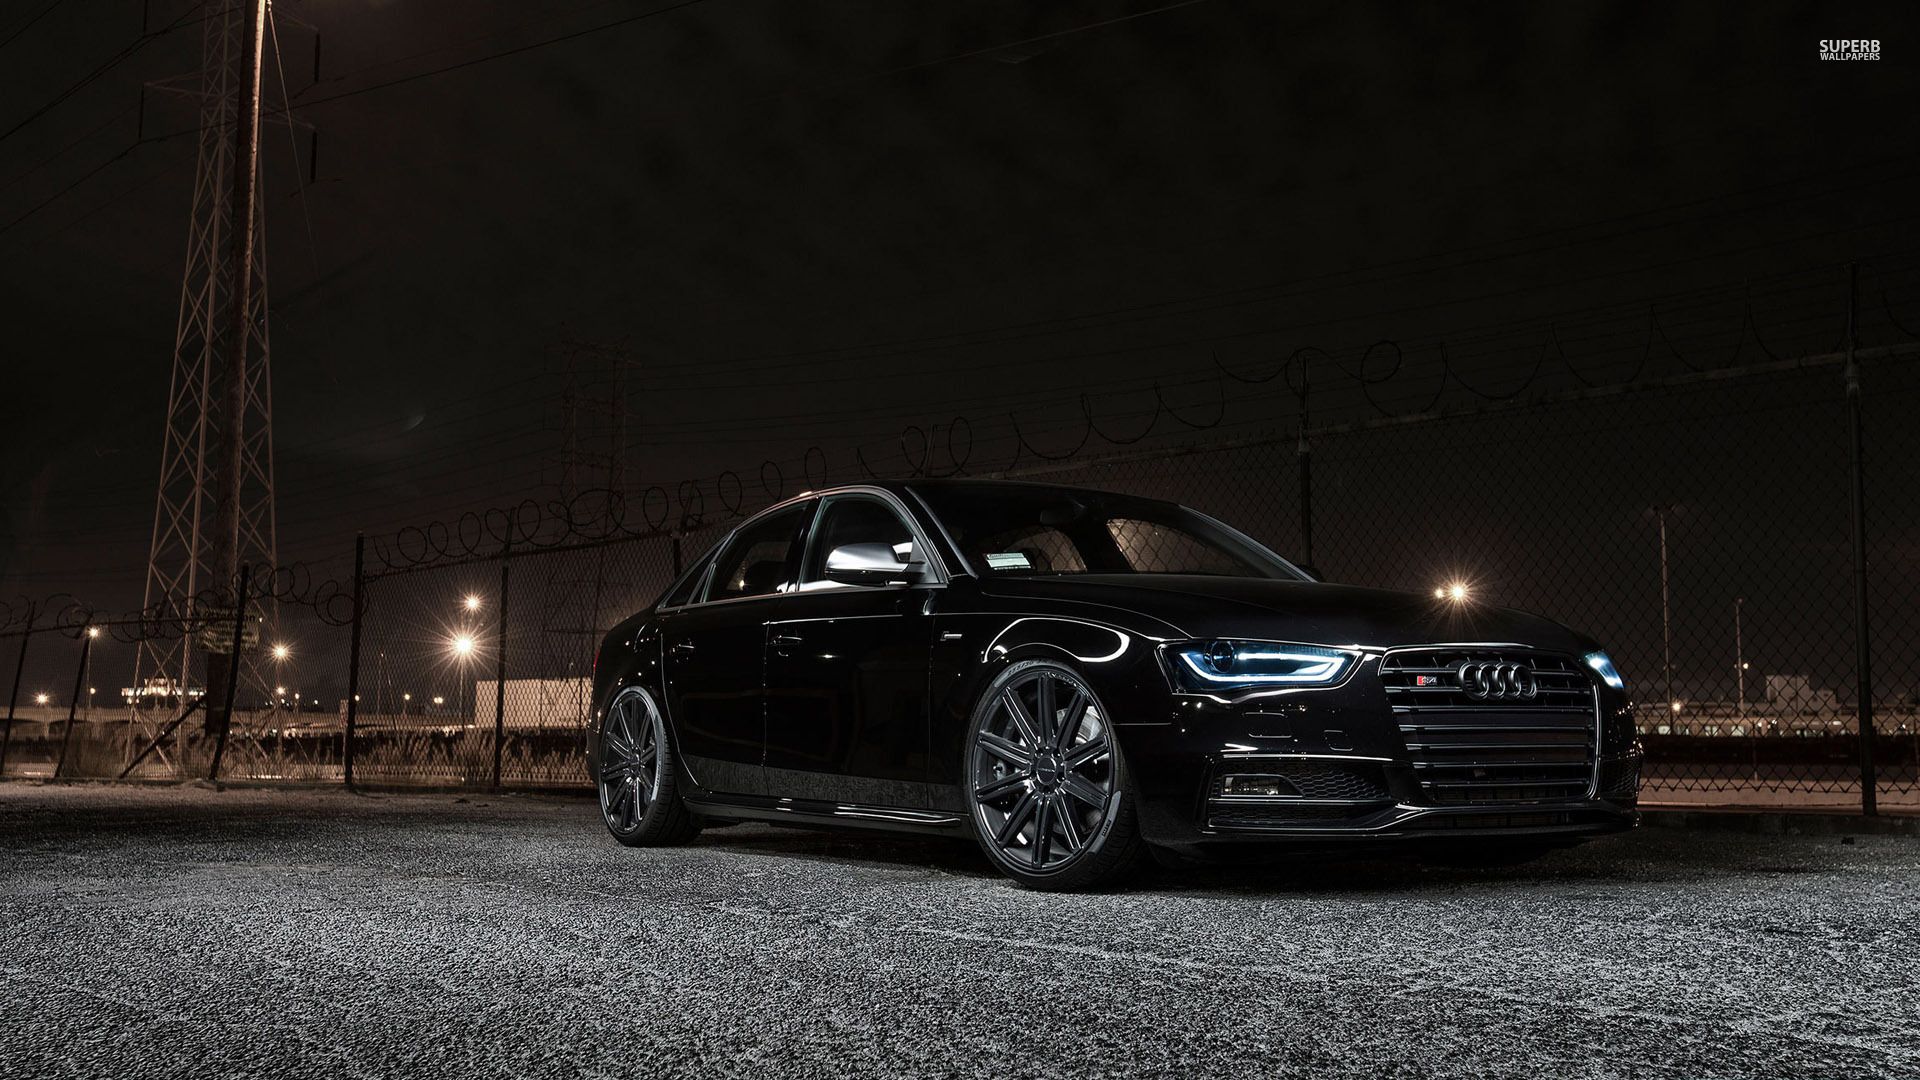 Audi S4 wallpaper - Car wallpapers -